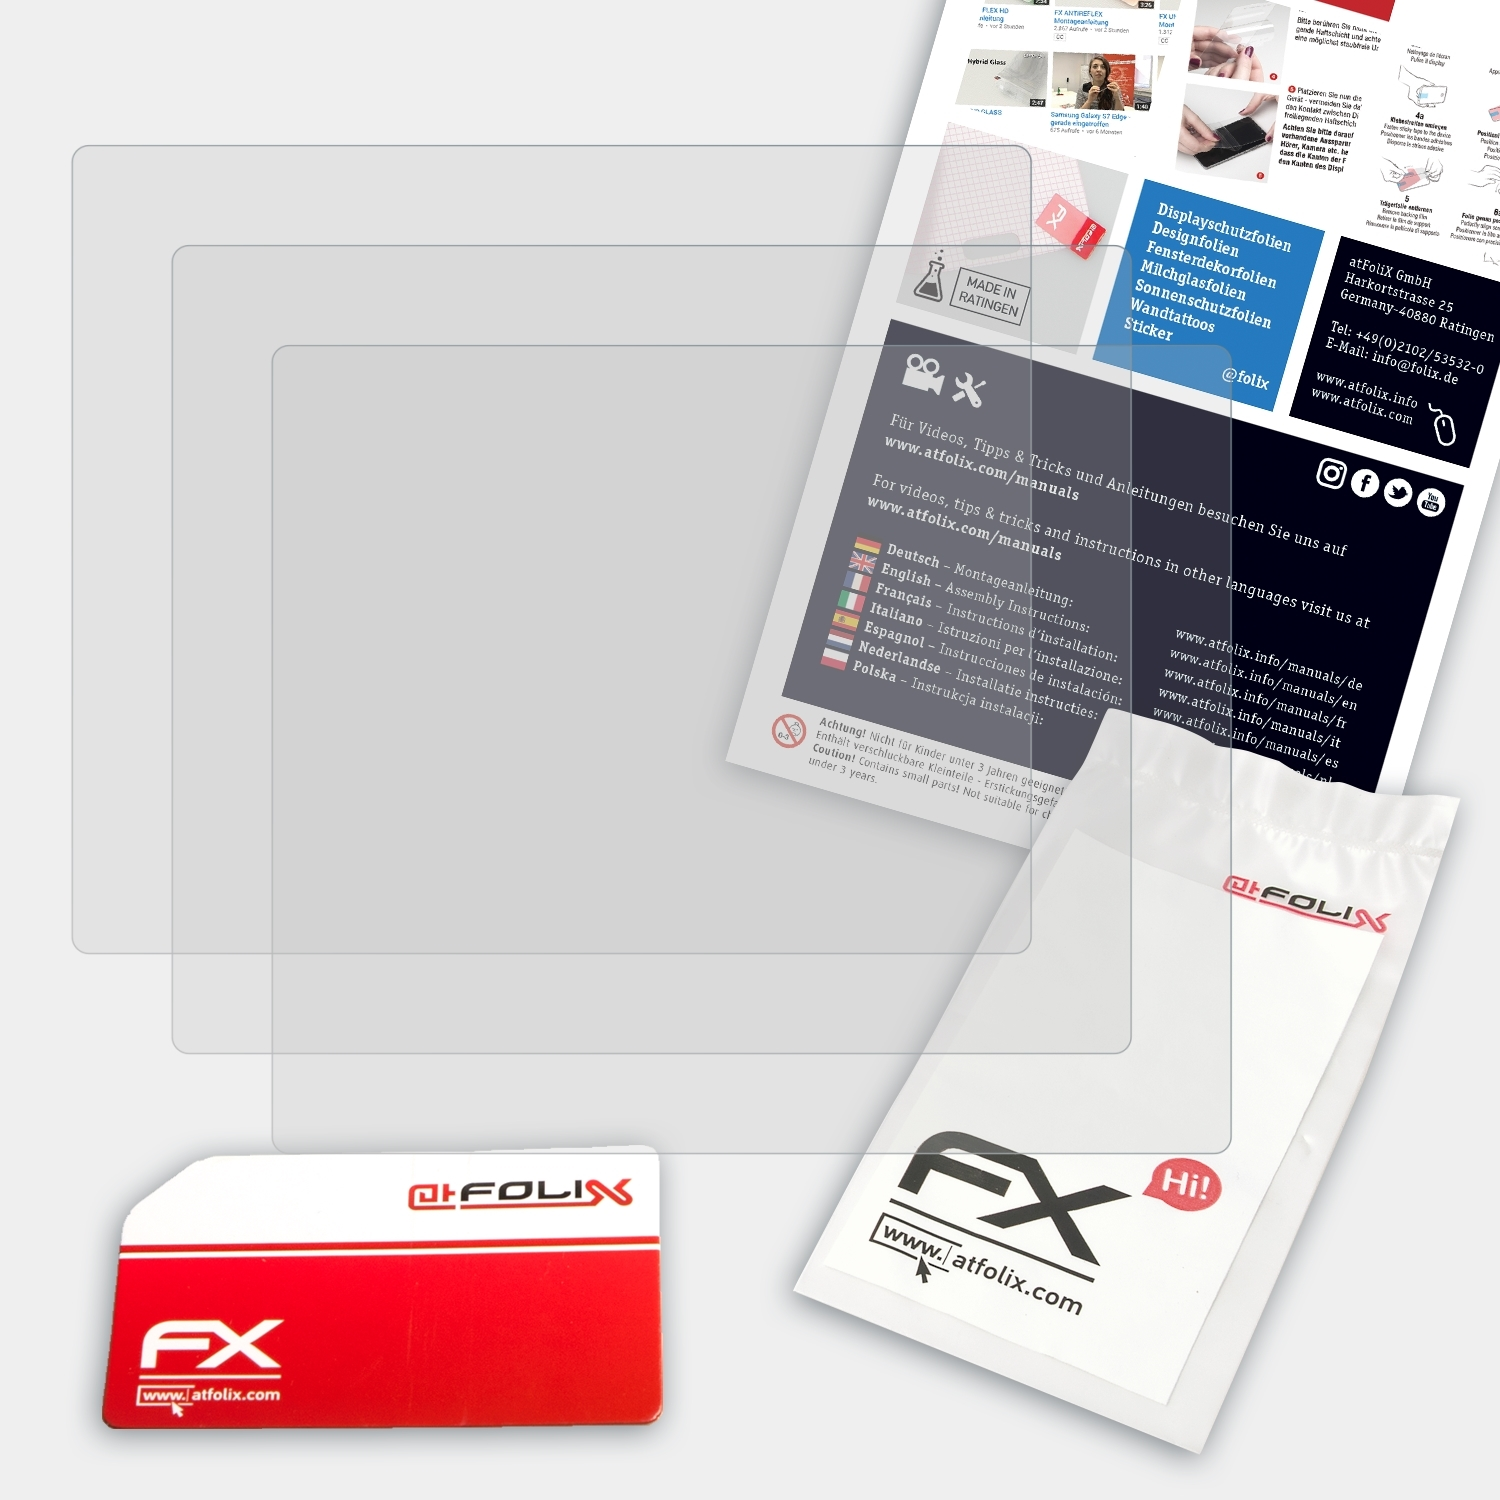 FX-Antireflex E-620) Olympus Displayschutz(für ATFOLIX 3x